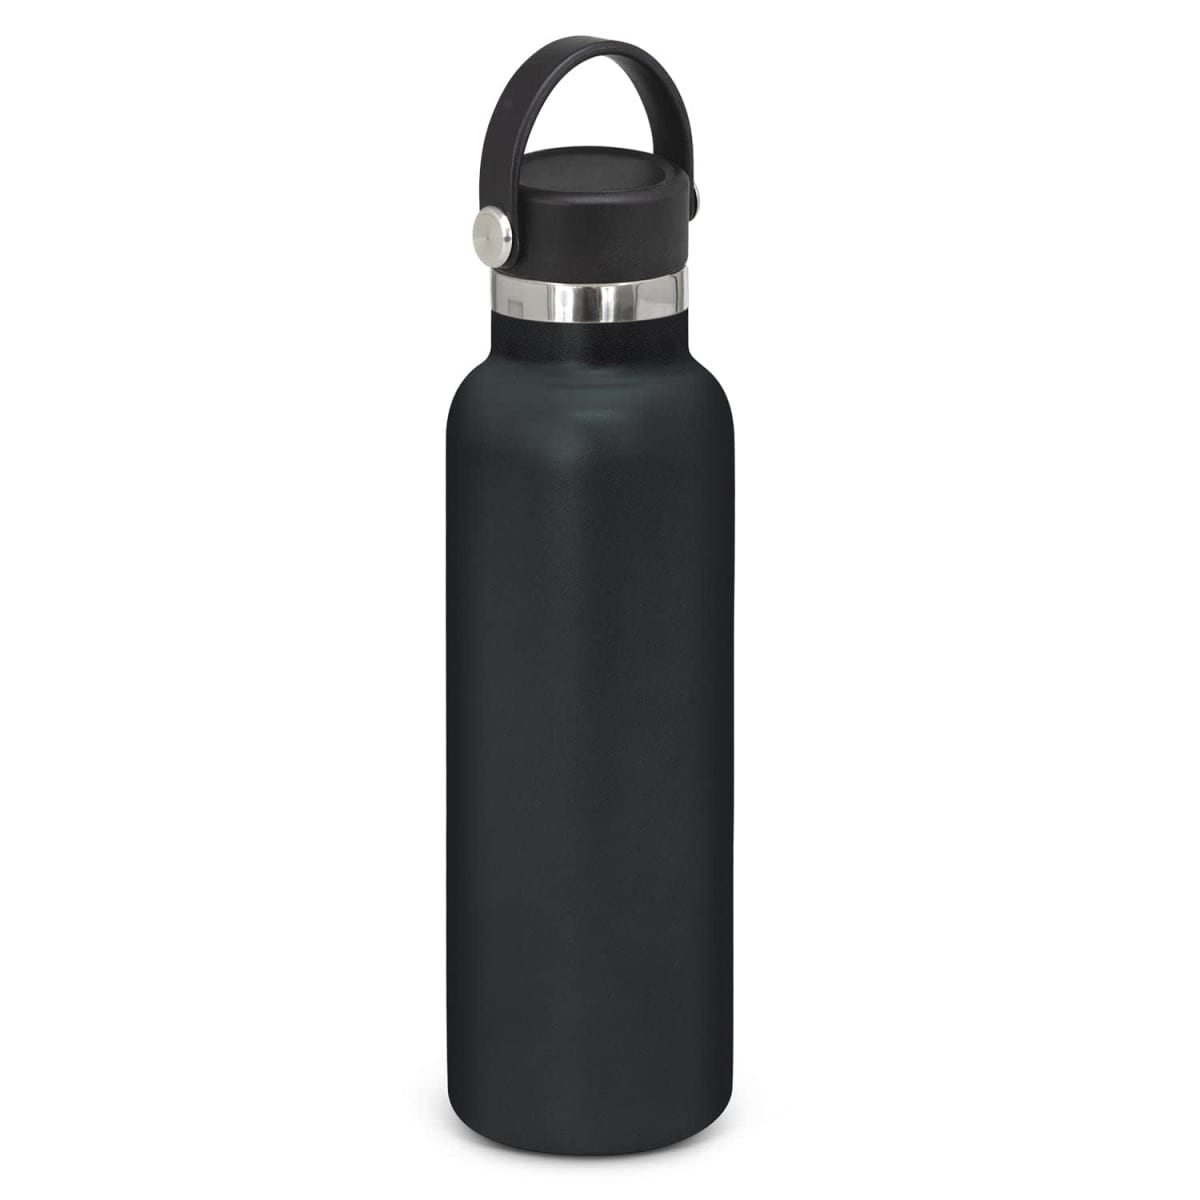 Nomad Vacuum Bottle - Carry Lid